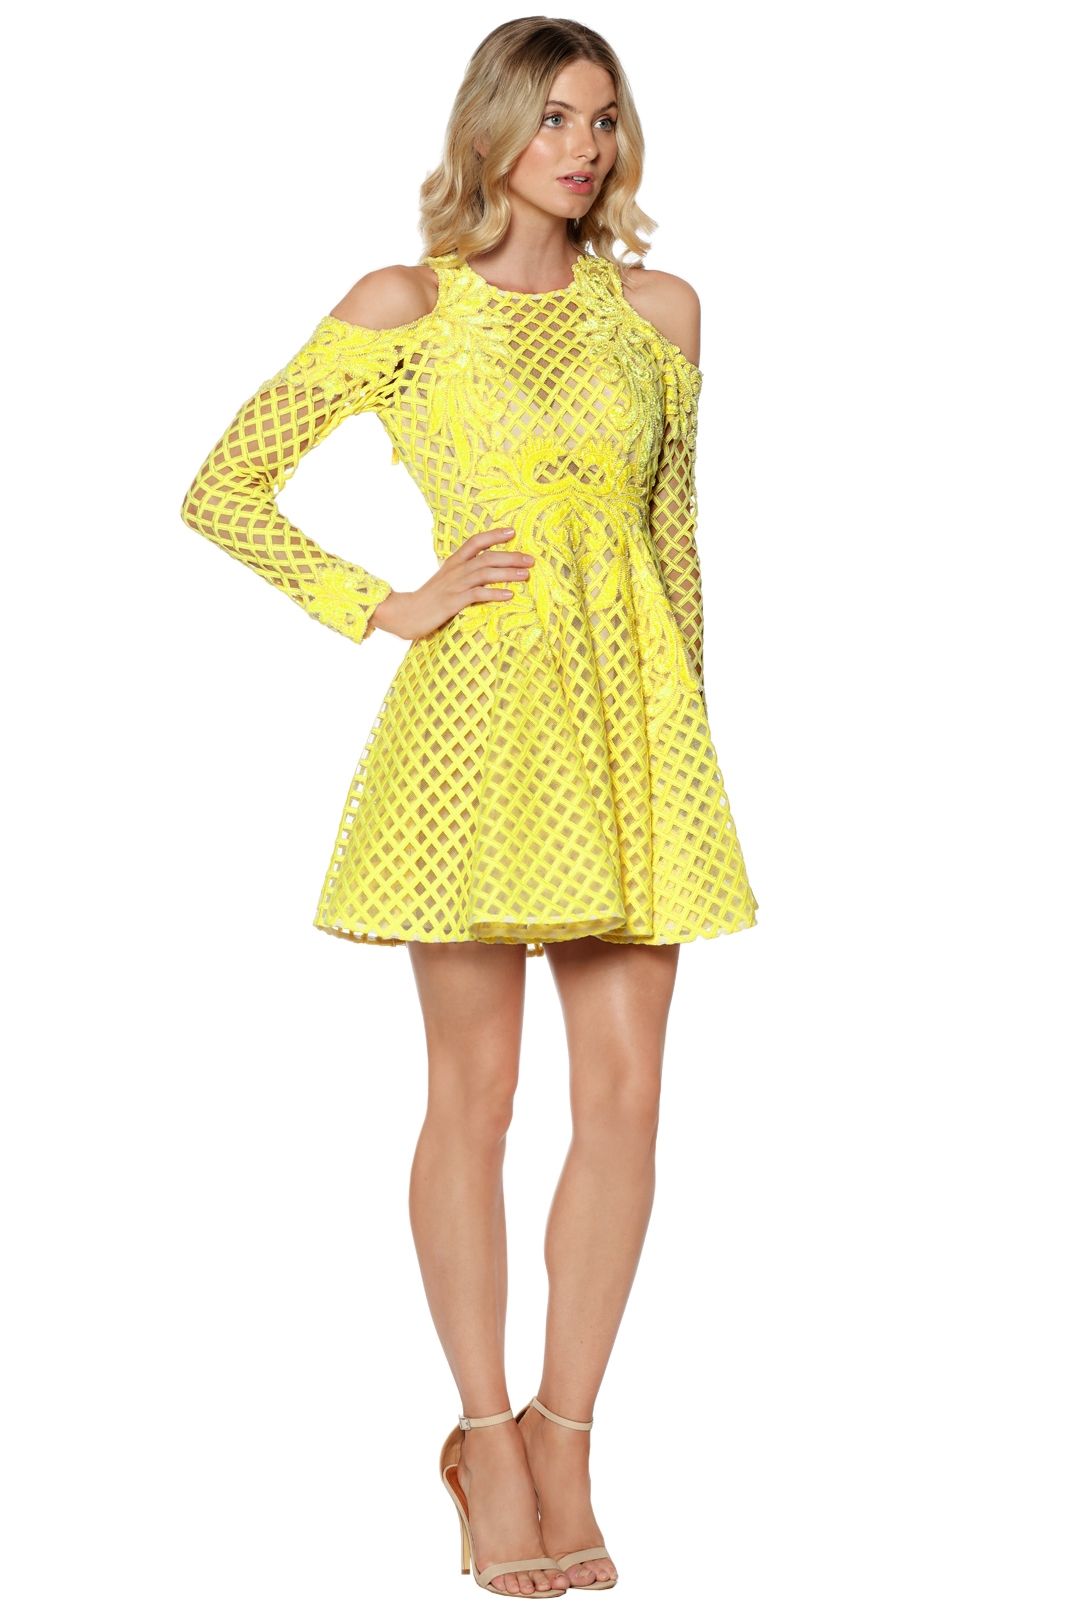 Thurley - Hybrid Dress Daffodil - Yellow - Side